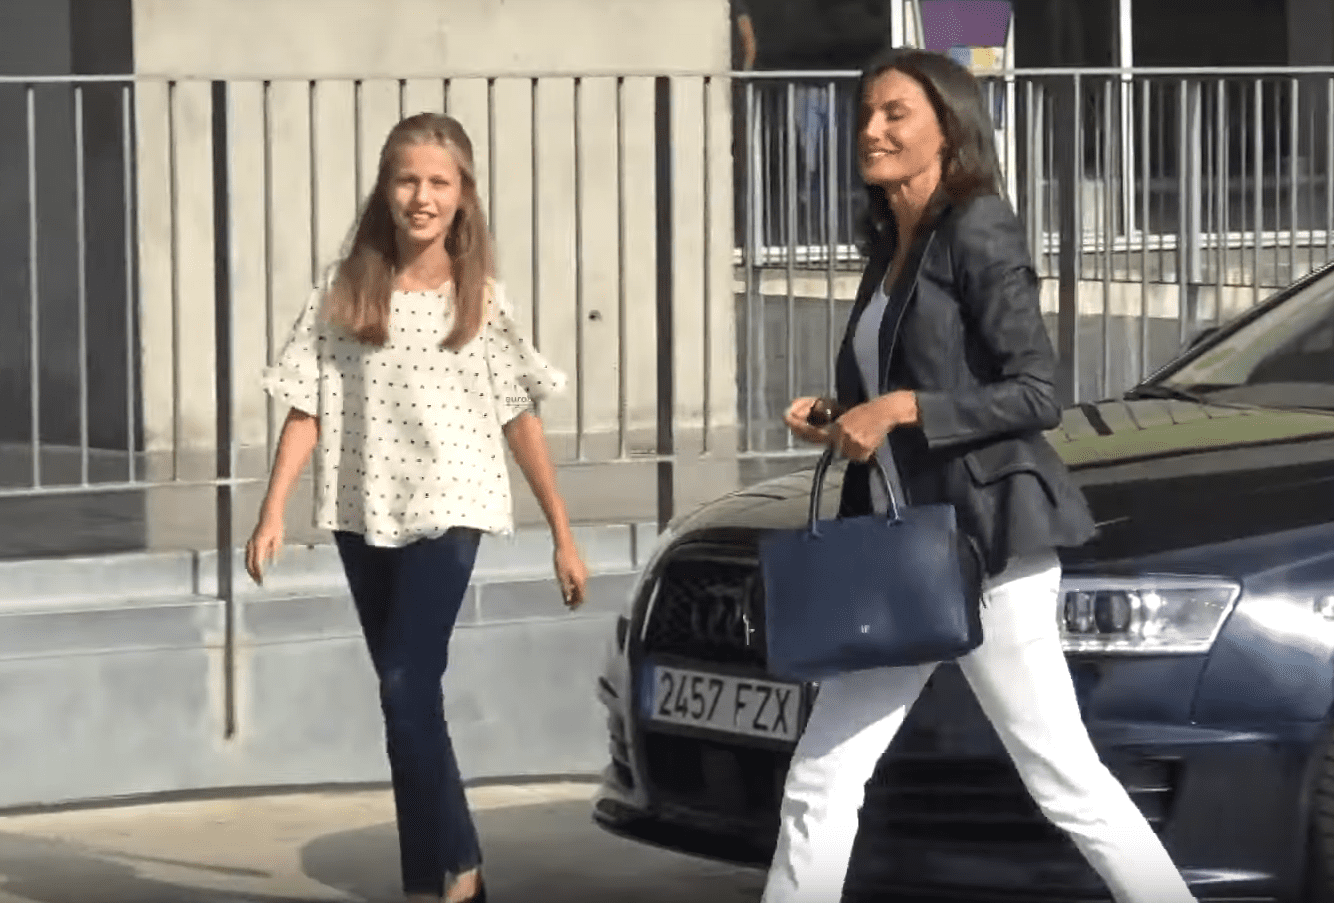 La Reina Letizia y la princesa Leonor visitan al Rey Juan Carlos I, el 30 de agosto de 2019 en el hospital Quirónsalud de Madrid. | Imagen: YouTube/ Europa Press